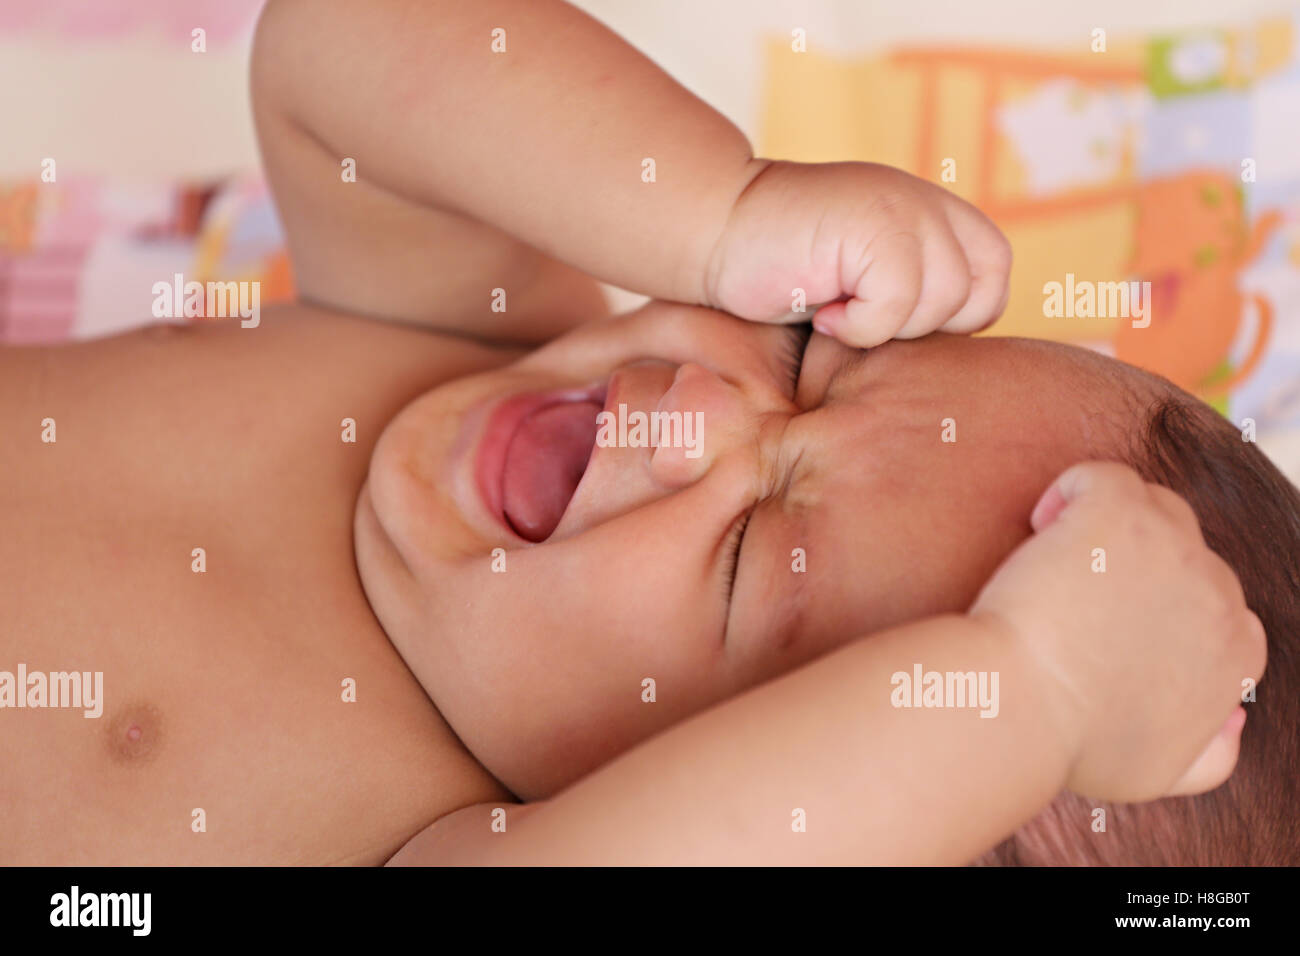 Asiatische Baby weint auf Bett, Konzept für Gesundheit und Wachstum. Stockfoto